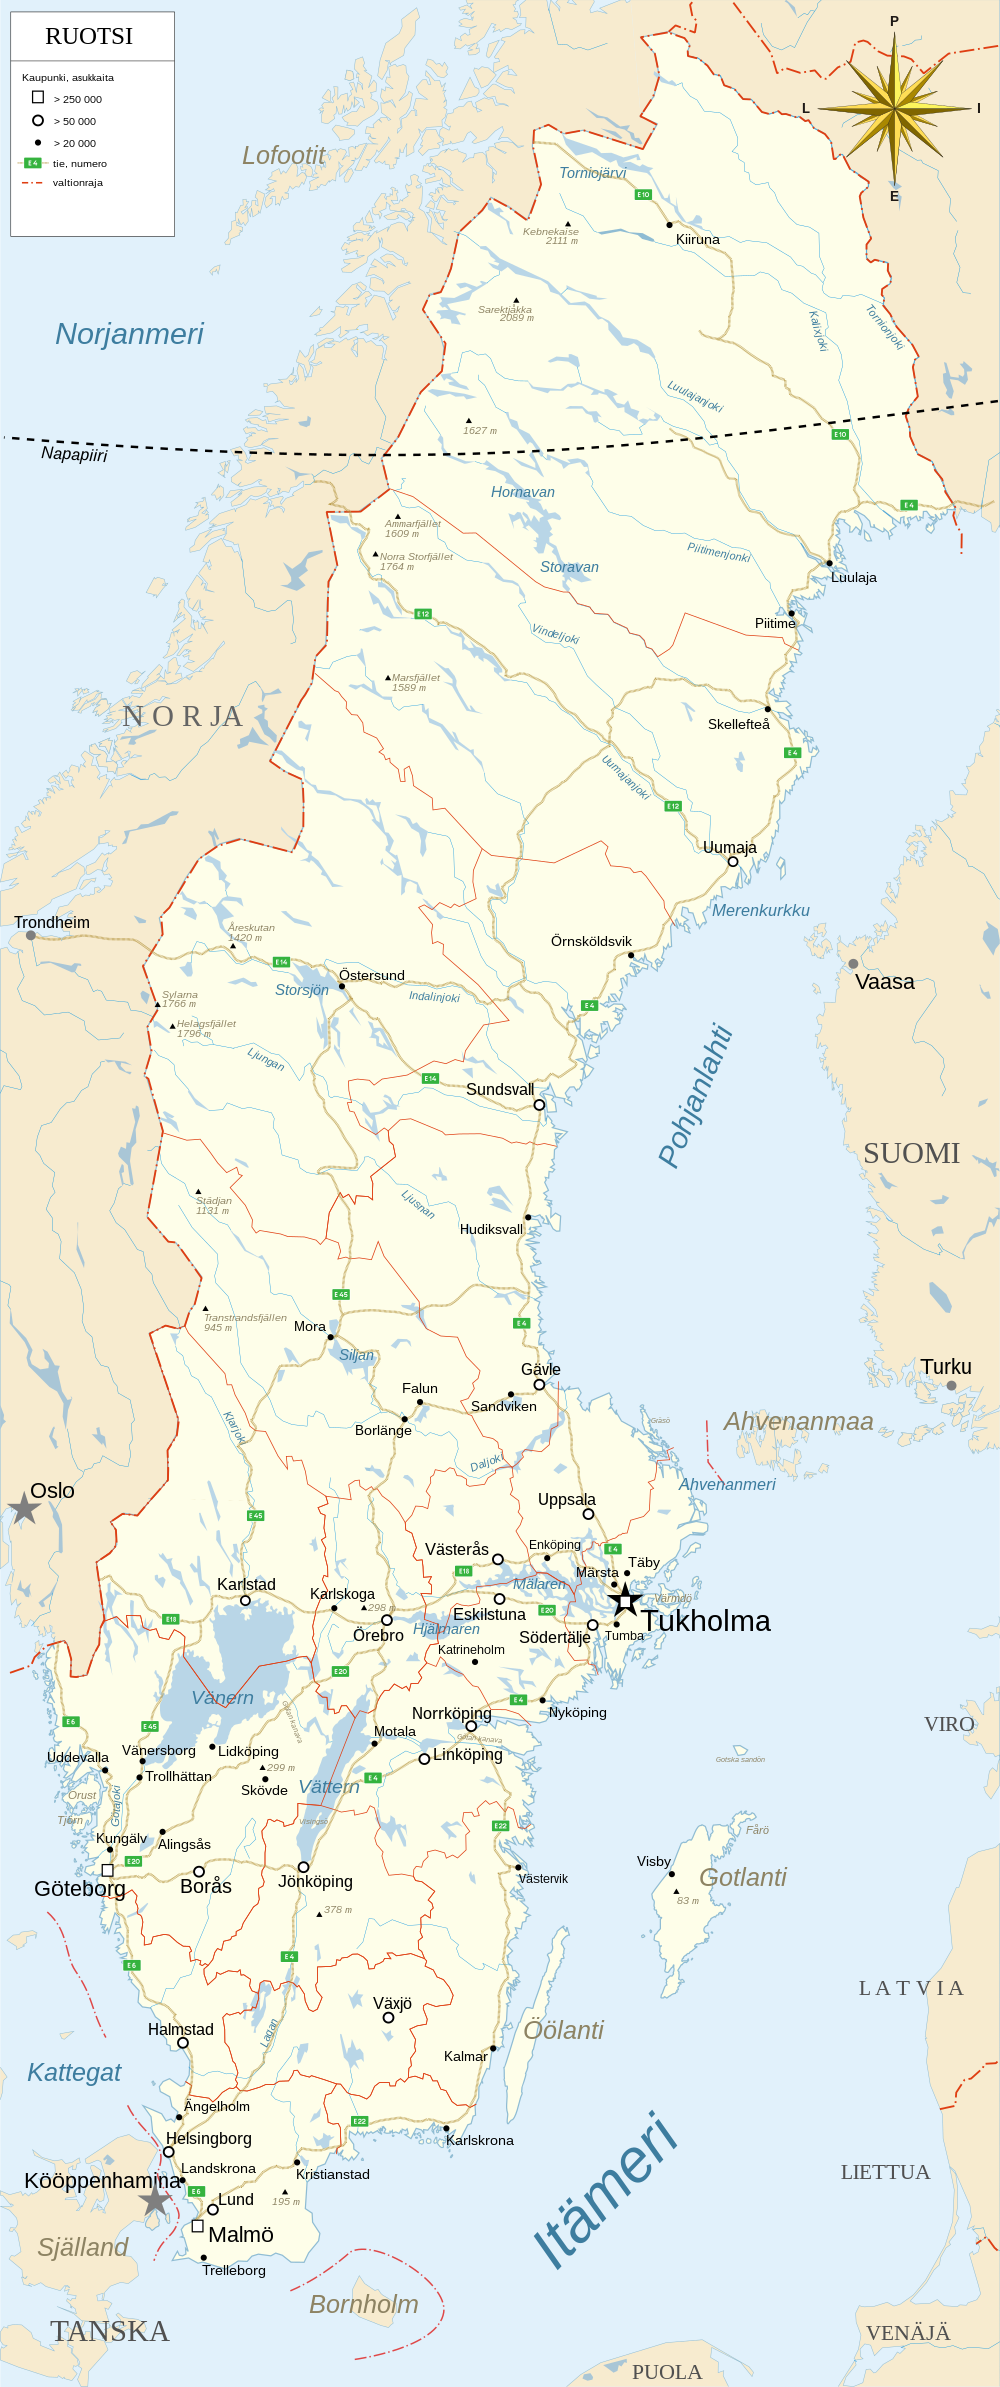 Ruotsin Tiekartta ja Reittiopas - Maailman ja Suomen Kartat - SafeDollar